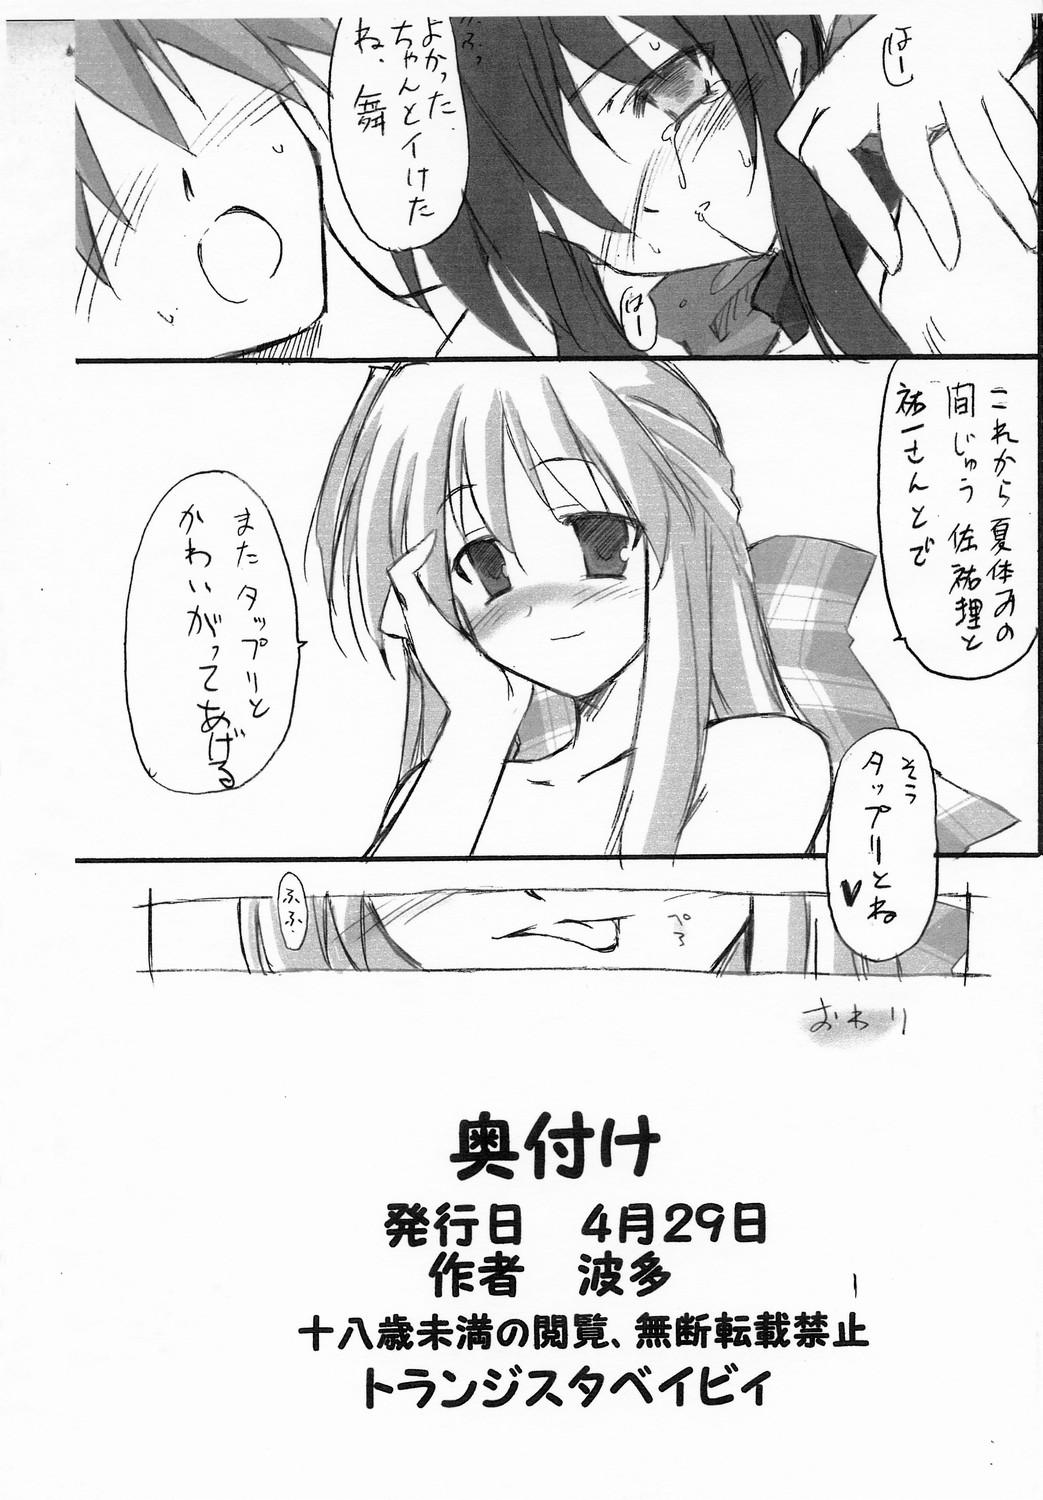 Animated Haru na no ni - Manatsu no Usagi - Kanon Hot Naked Women - Page 13